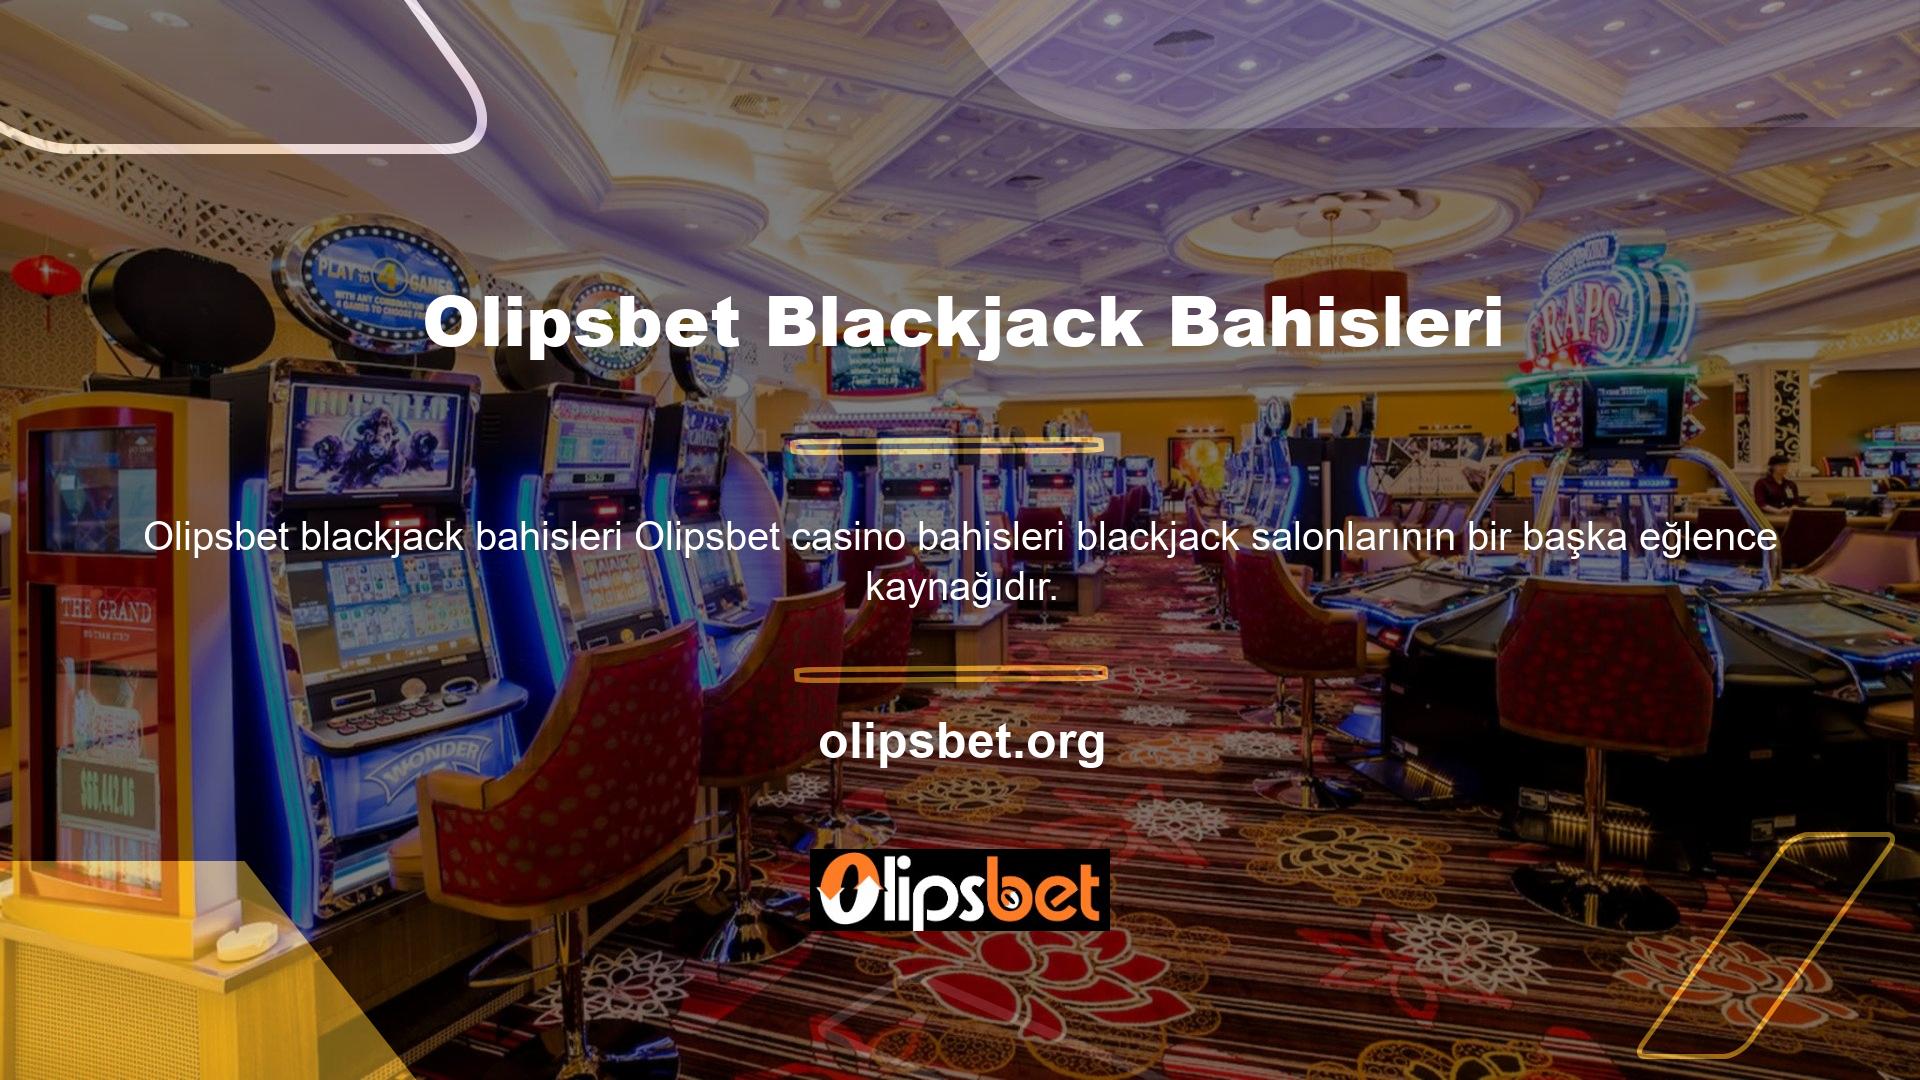 Uzman casino krupiyerleri oldukça popüler olan ve oynanan blackjacki sunmaktadır